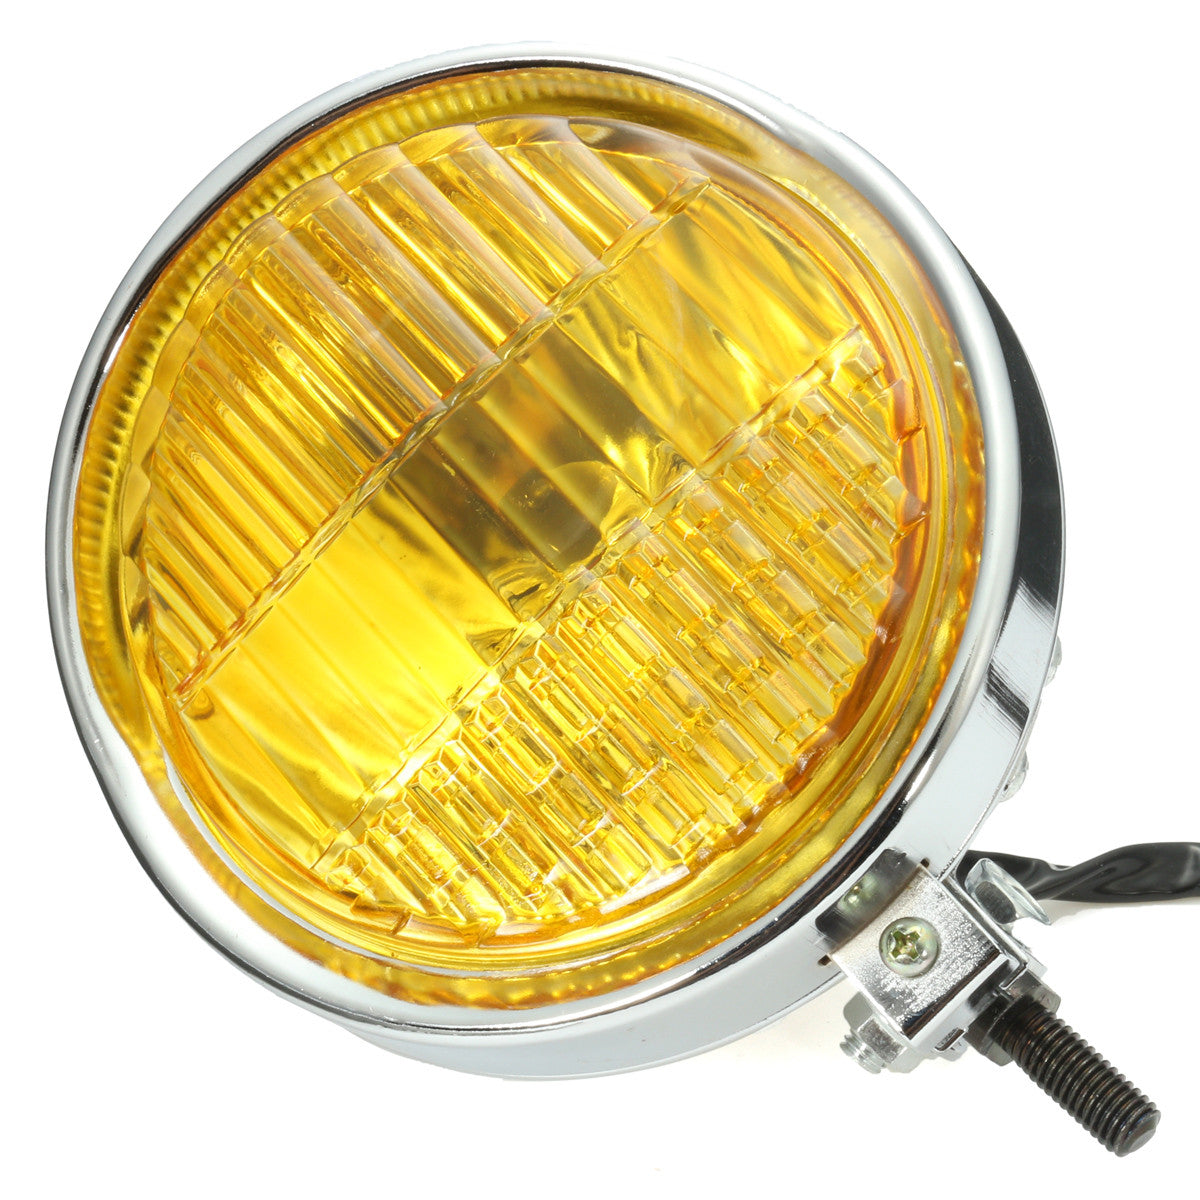 Goldenrod 5.75" Motorcycle Headlight Light Retro Metal Yellow Len For Harley Bobber Chopper